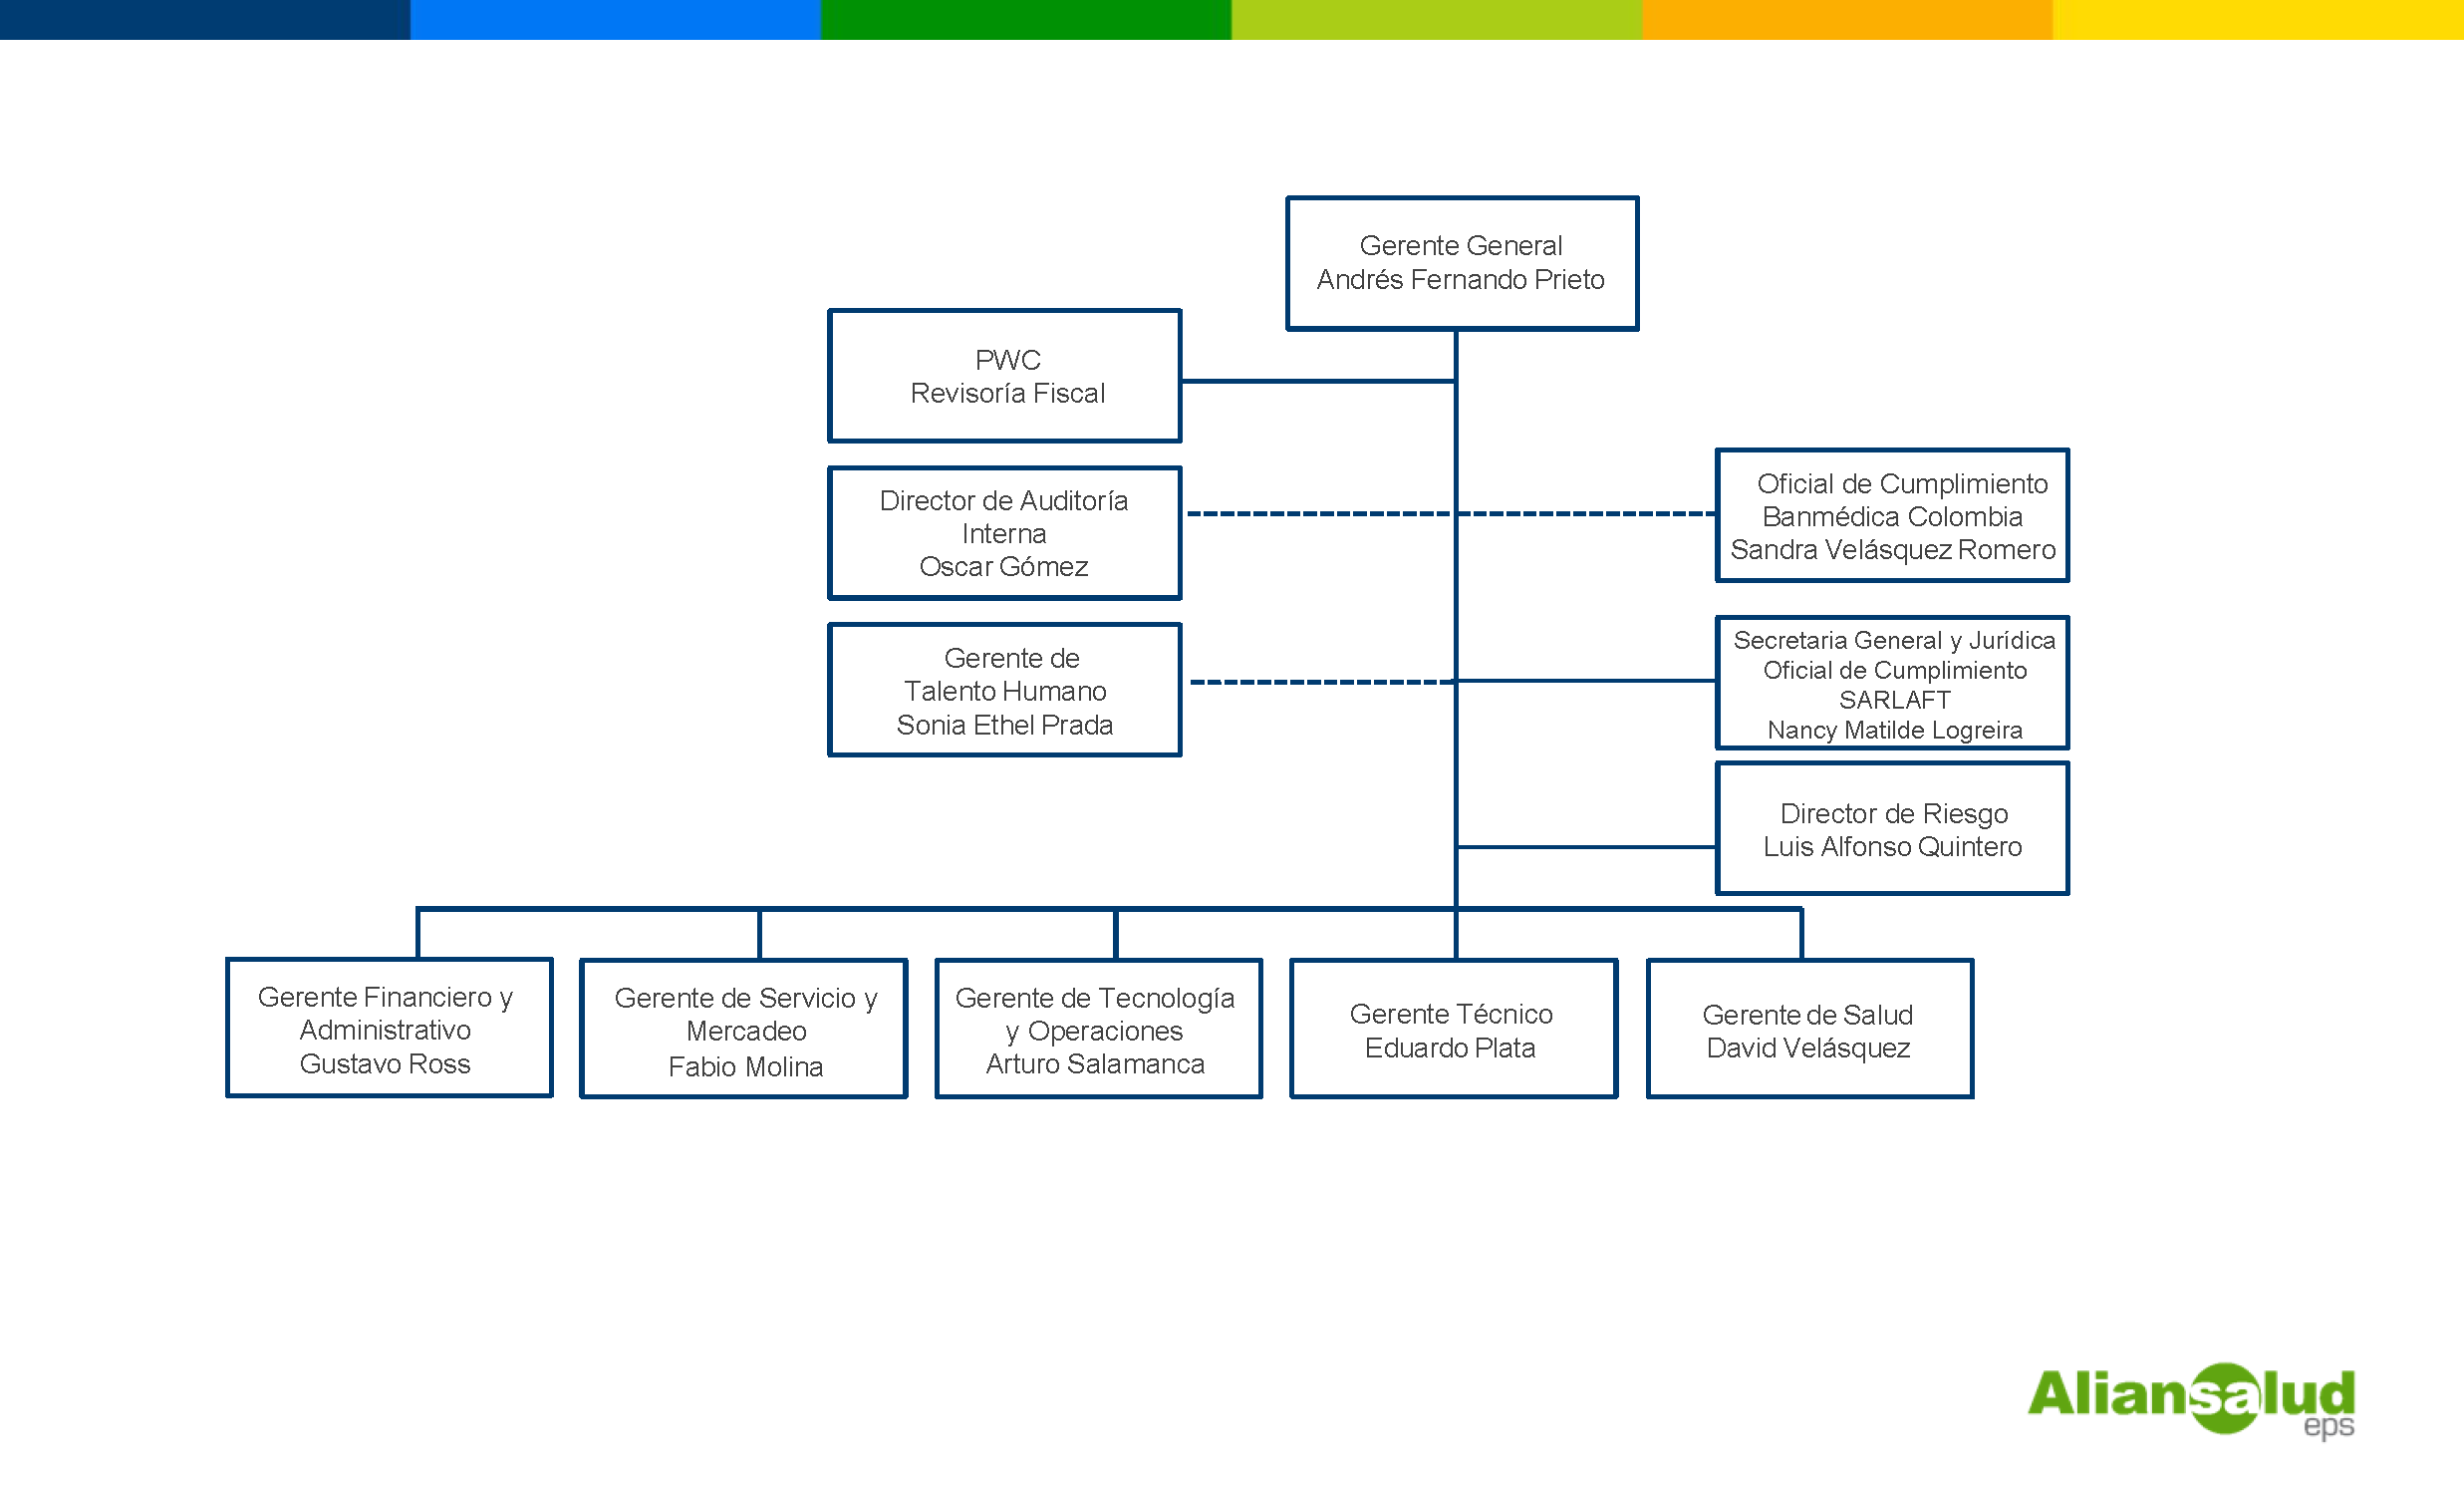 Estructura Organizacional Aliansalud EPS